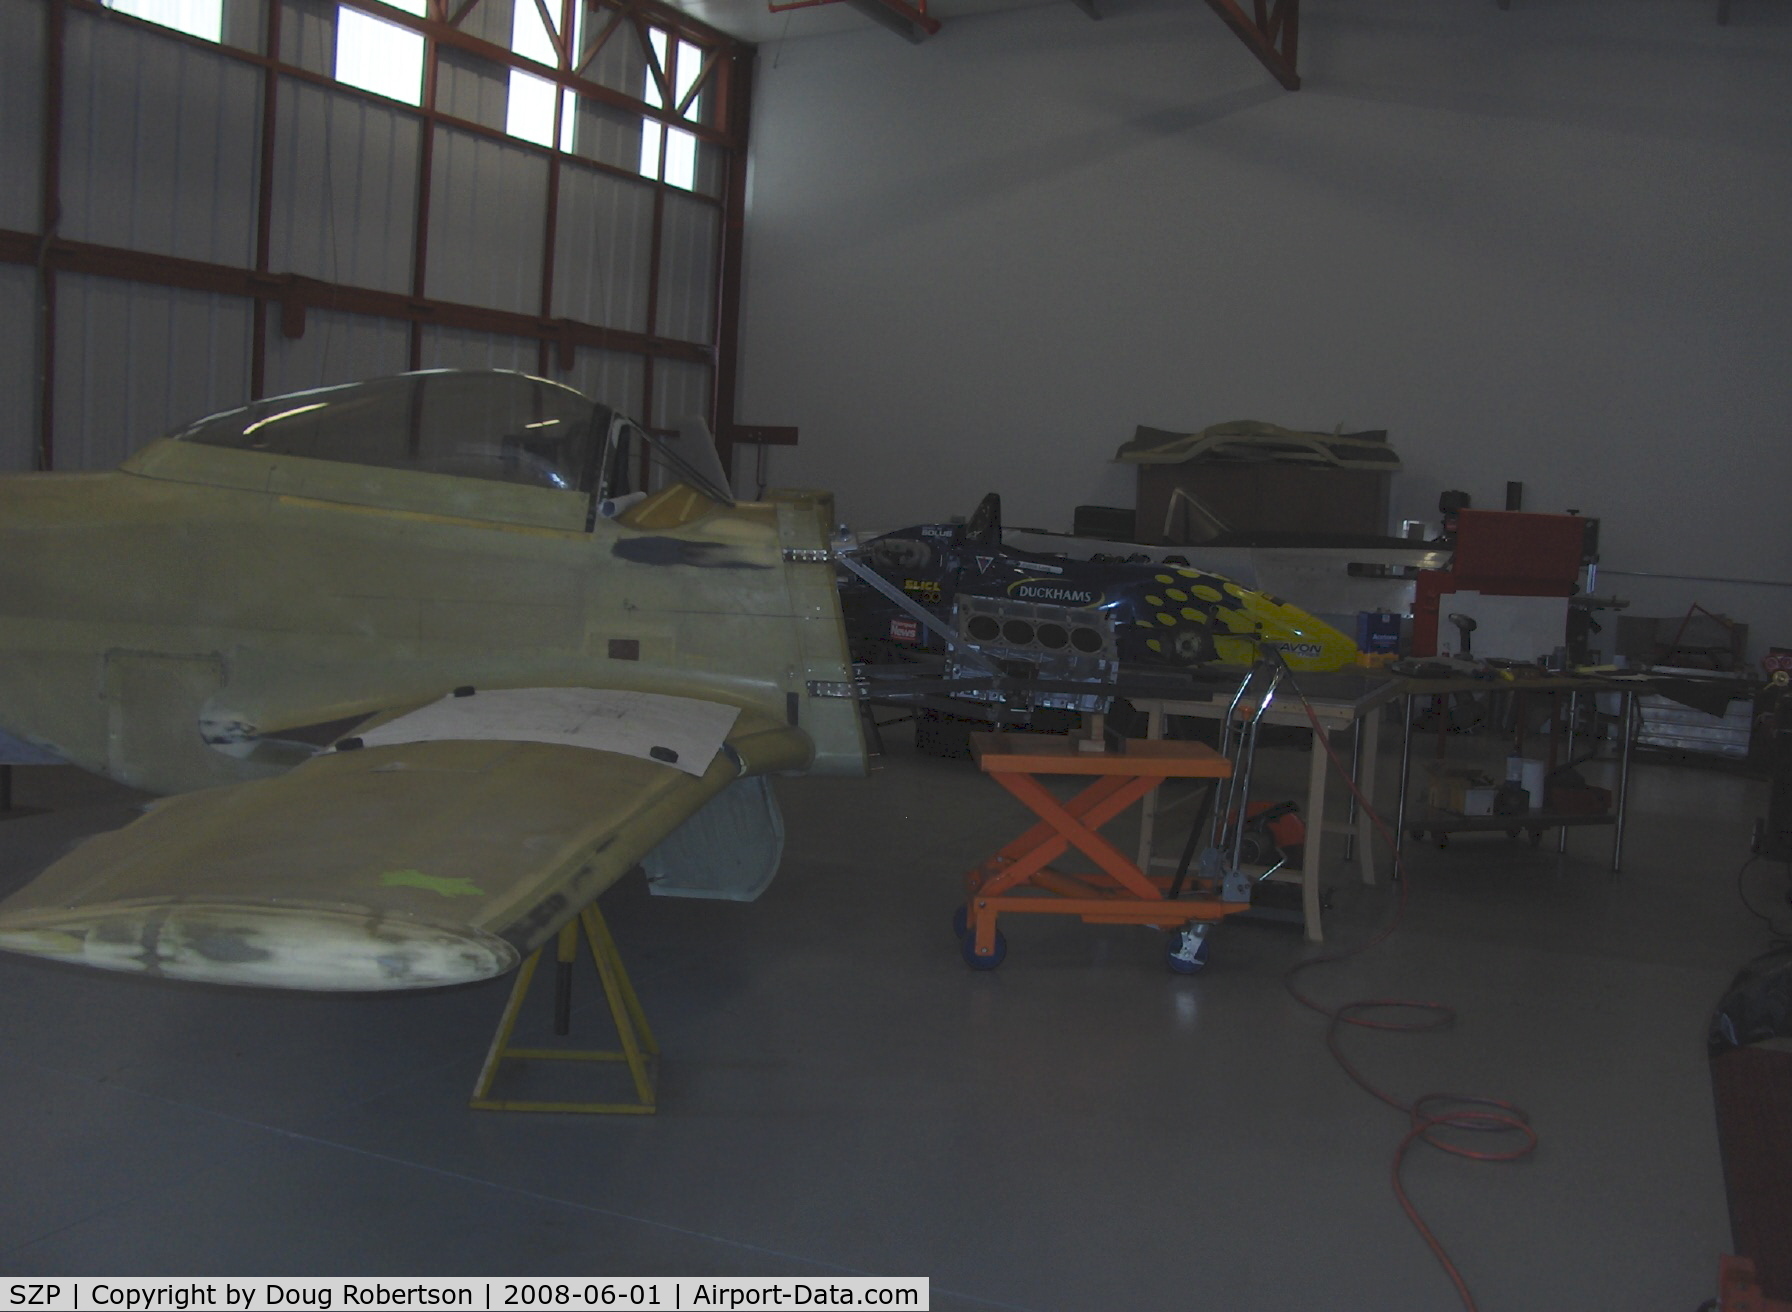 Santa Paula Airport (SZP) - Legendary Aircraft LLC, 70% scale P-51D MUSTANGS in Area 51. V-8 Corvette block powerplant.